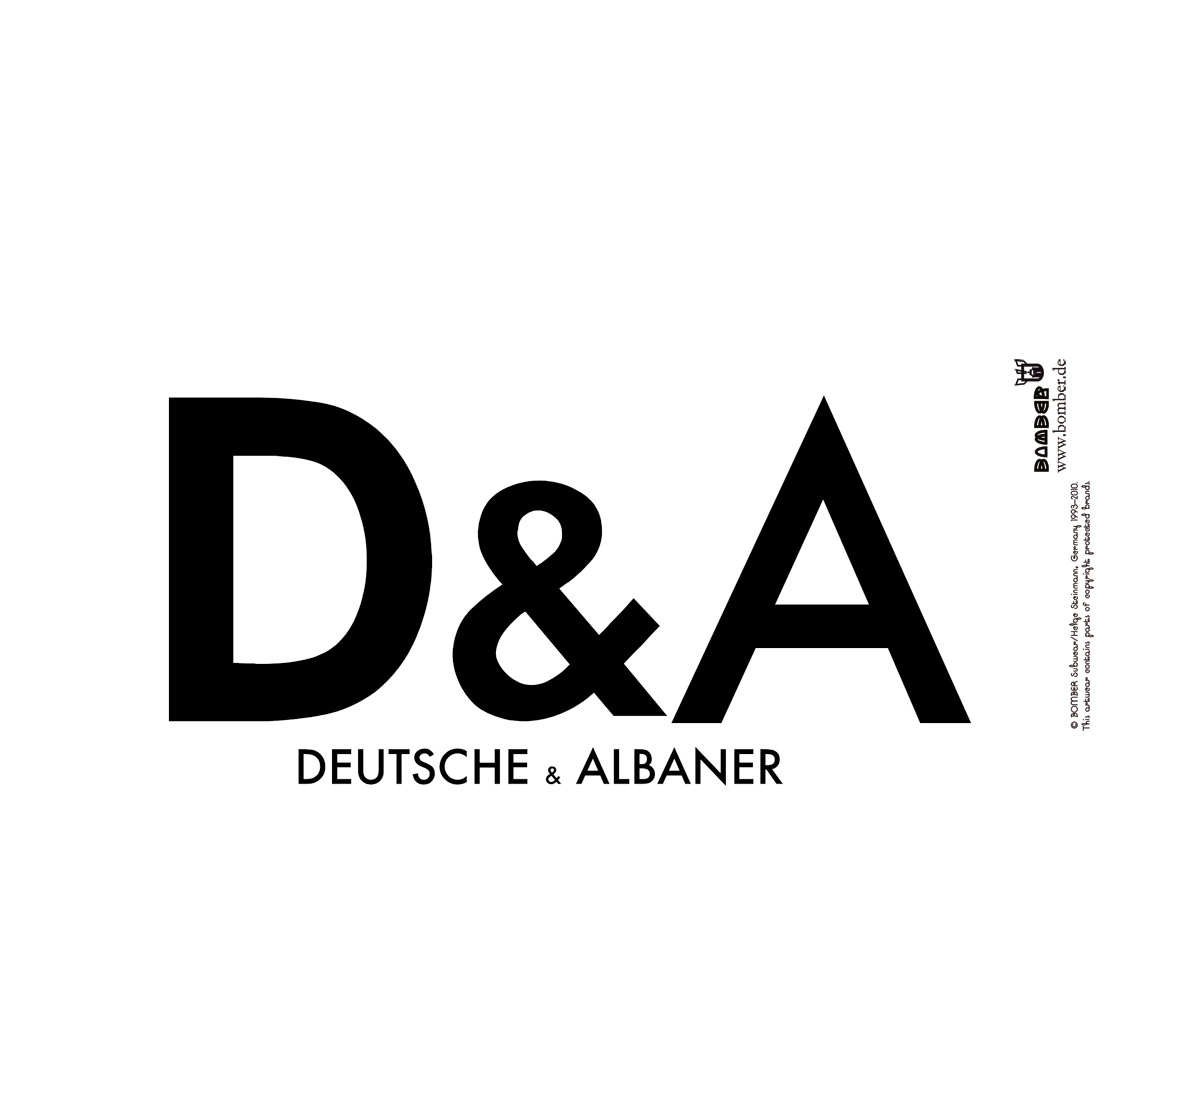 Deutsche-Albaner_web